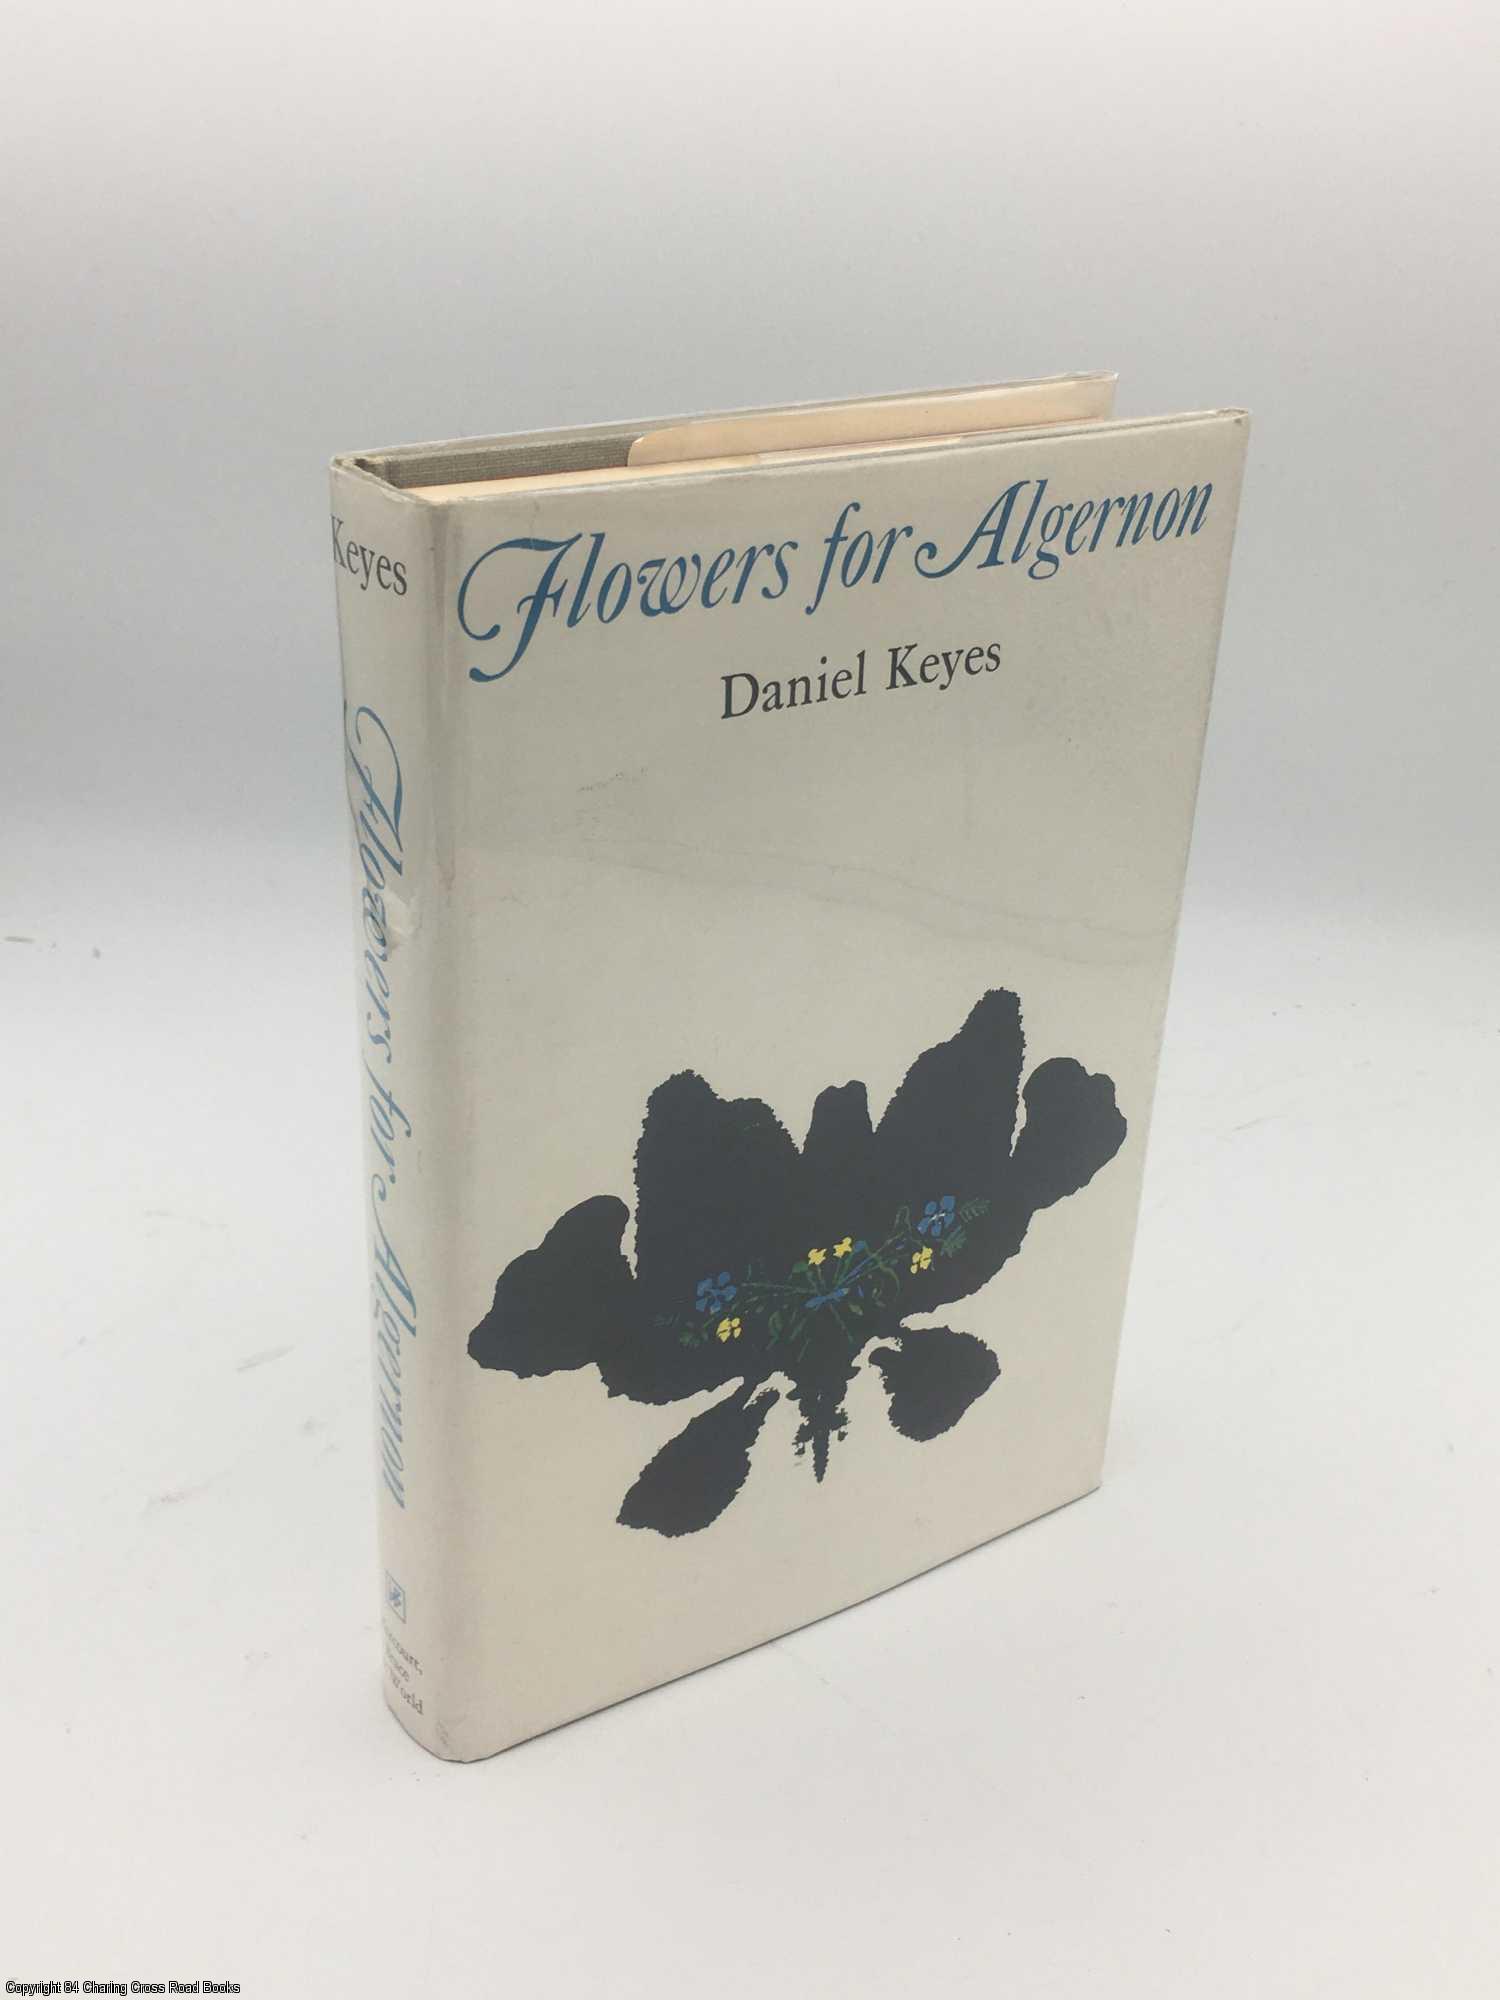 Flowers For Algernon Daniel Keyes